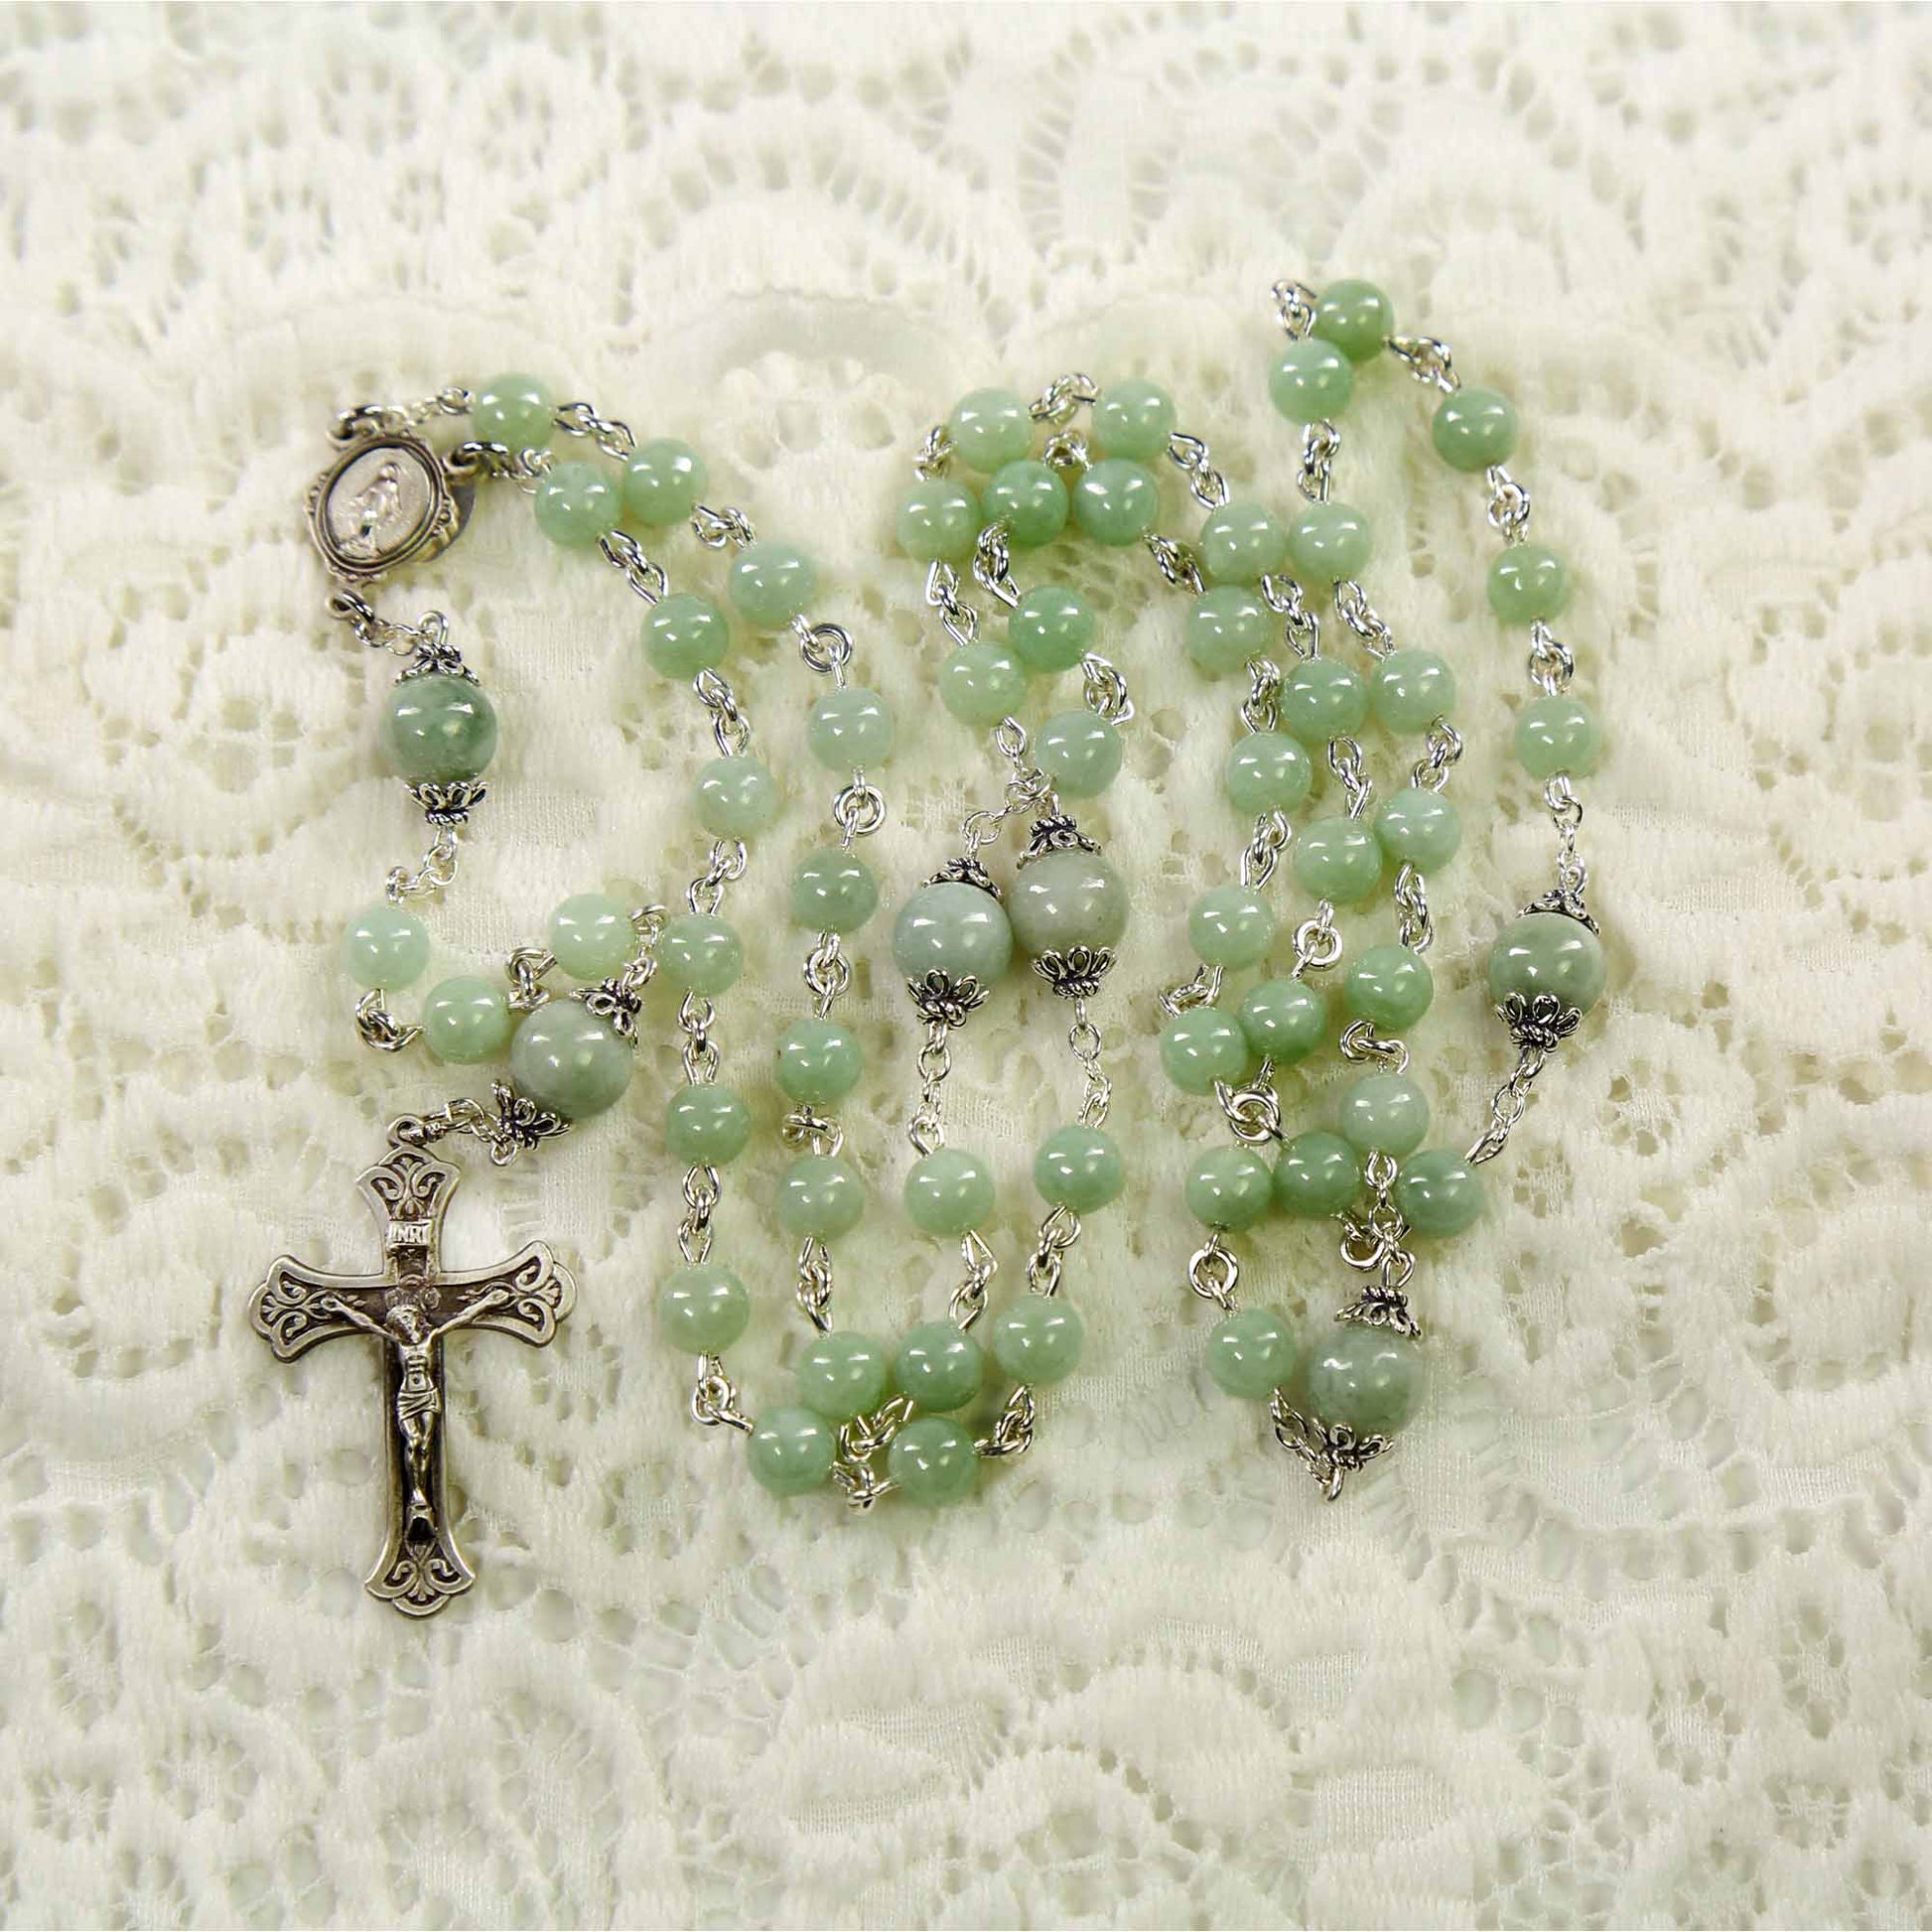 Jade Rosary Beads – Jade Mine